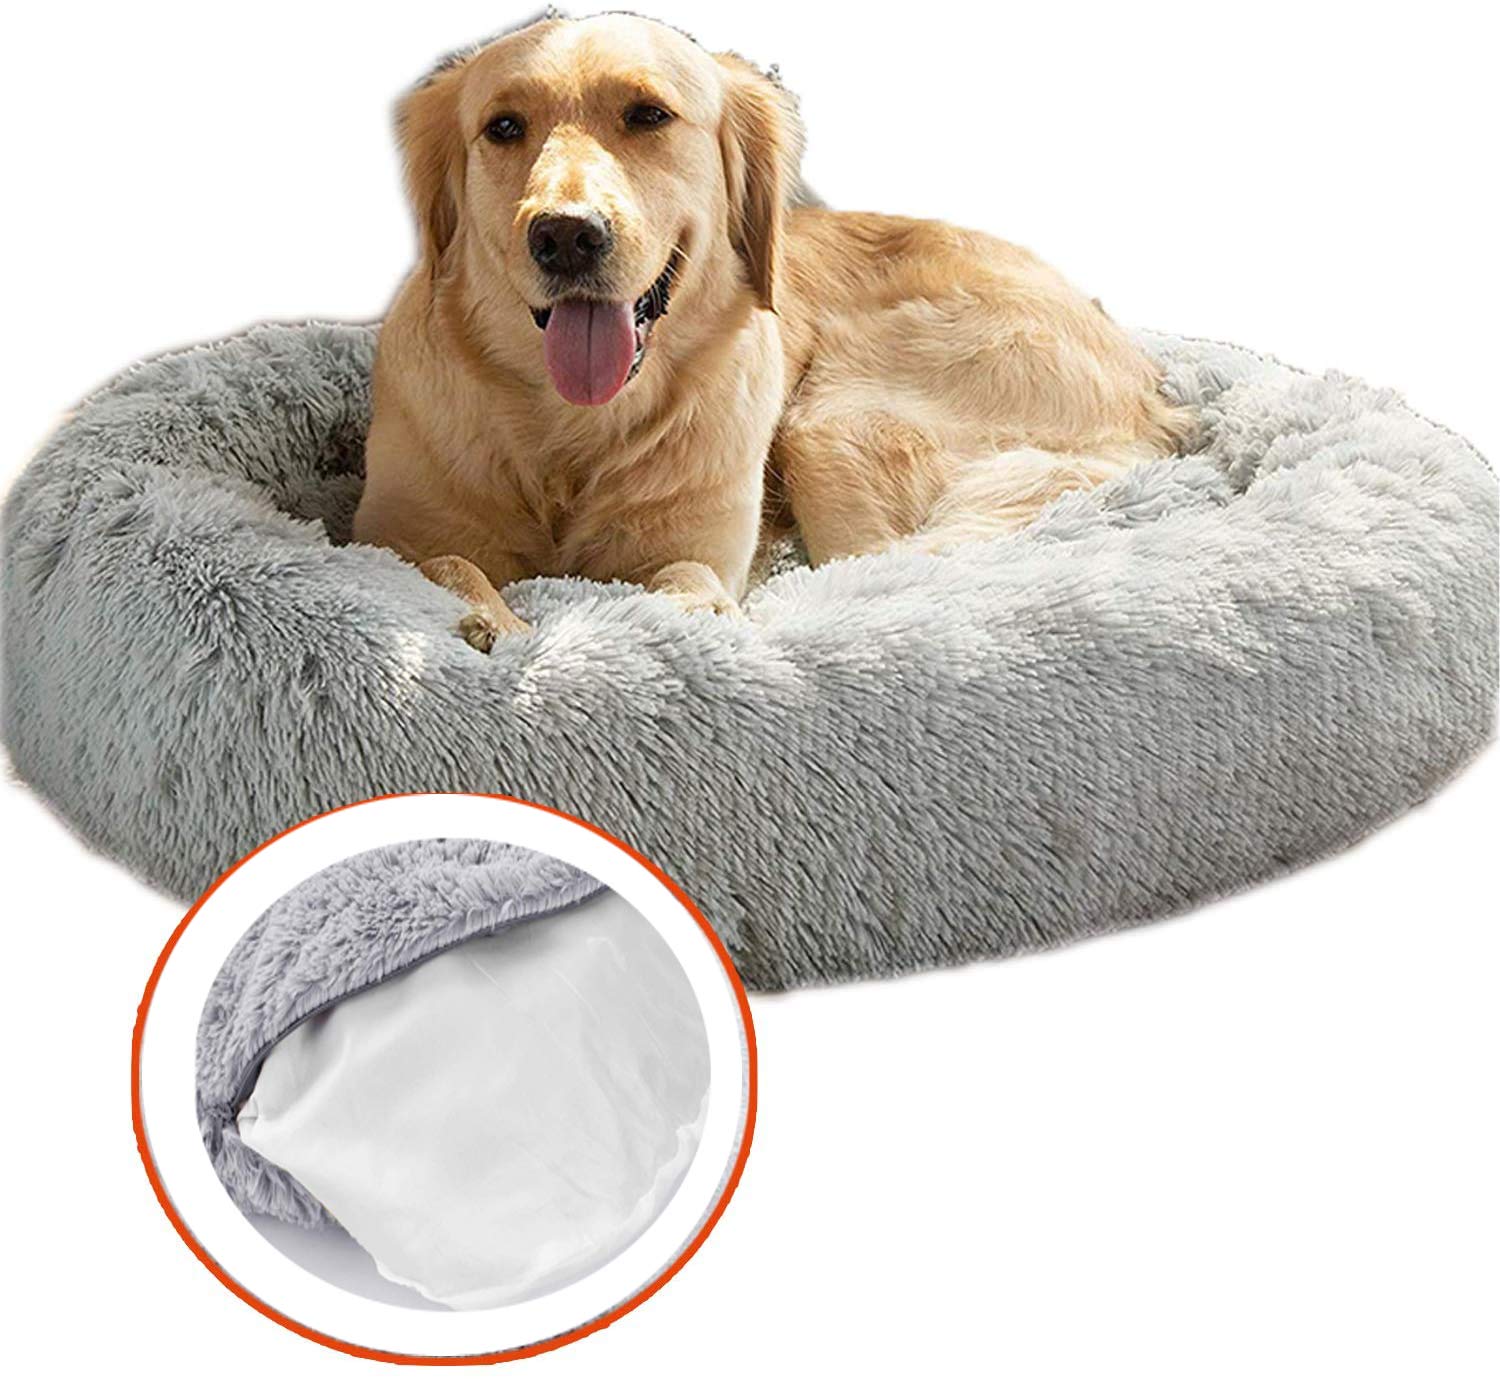 Deluxe Runden Hunde Bett Haustier Nest für Hunde und Katzen, mit Reißverschluss Weiches Donut Hundekissen,Flauschig Hundebett rutschfeste Unterseite